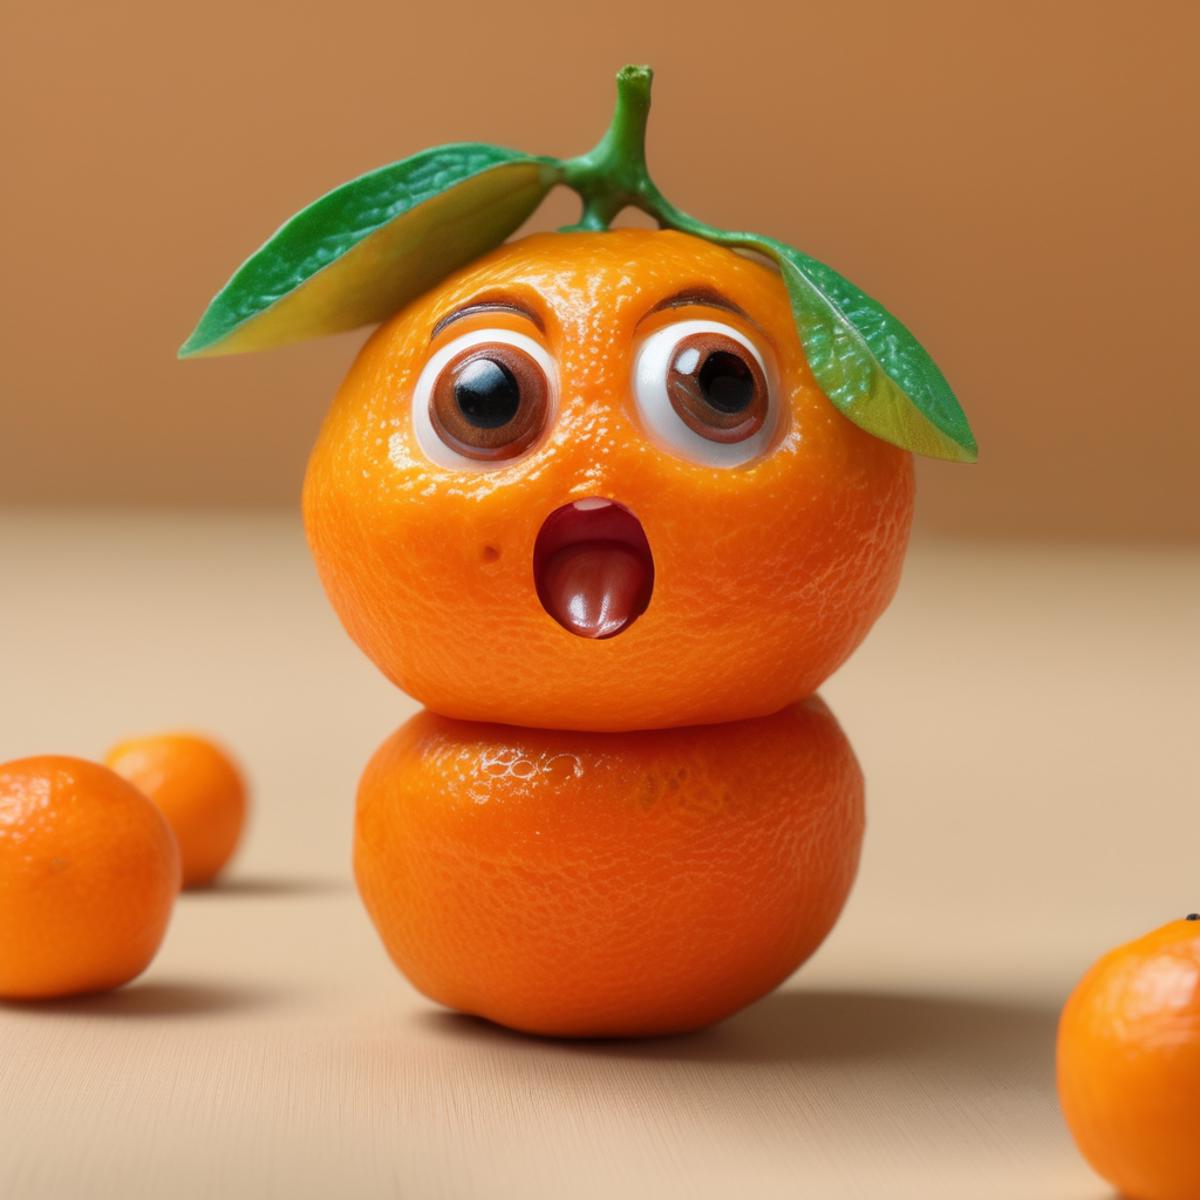 CuteFruitsRedmond - Cute Fruits Lora for SD XL image by artificialguybr